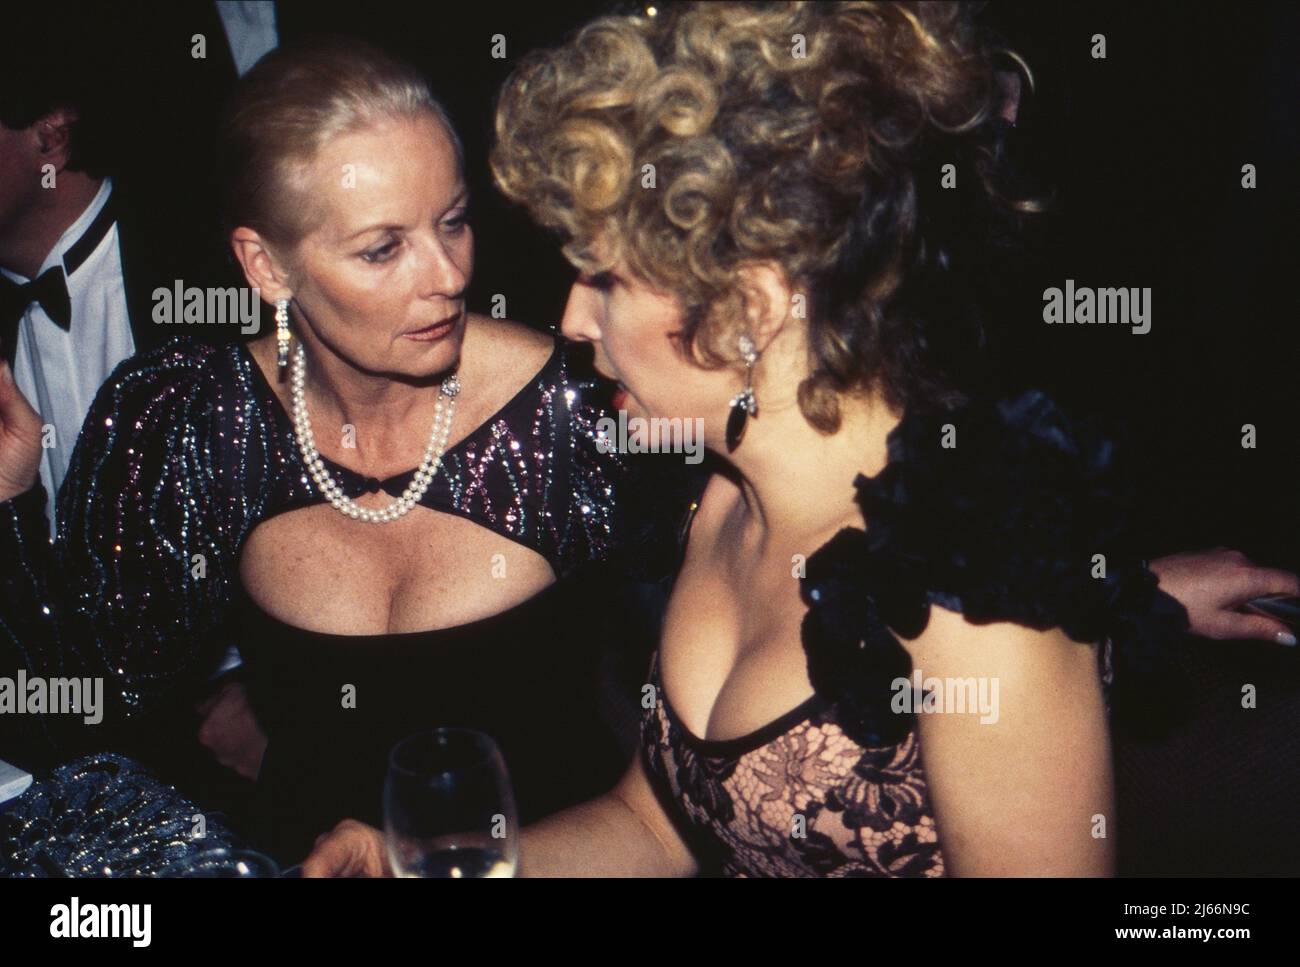 Angelika Ott Spiehs mit Michaela May bei einer Abendveranstaltung, Deutschland 1990er Jahre. Stockfoto